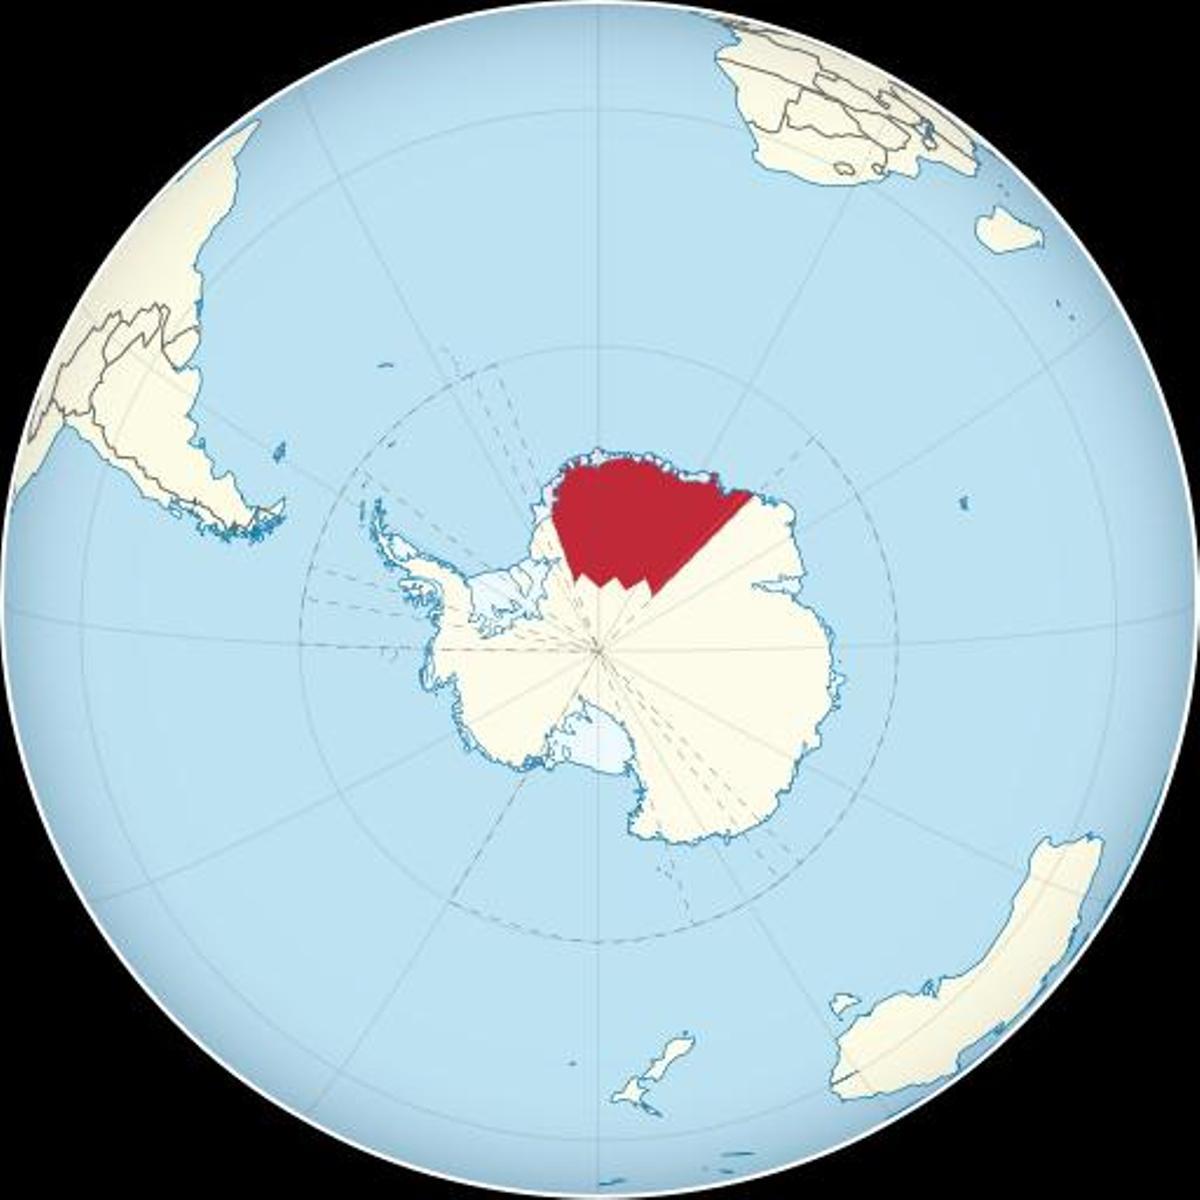 Mapa del globo terráqueo señalando la región de la Tierra de la Reina Maud (Antártida)